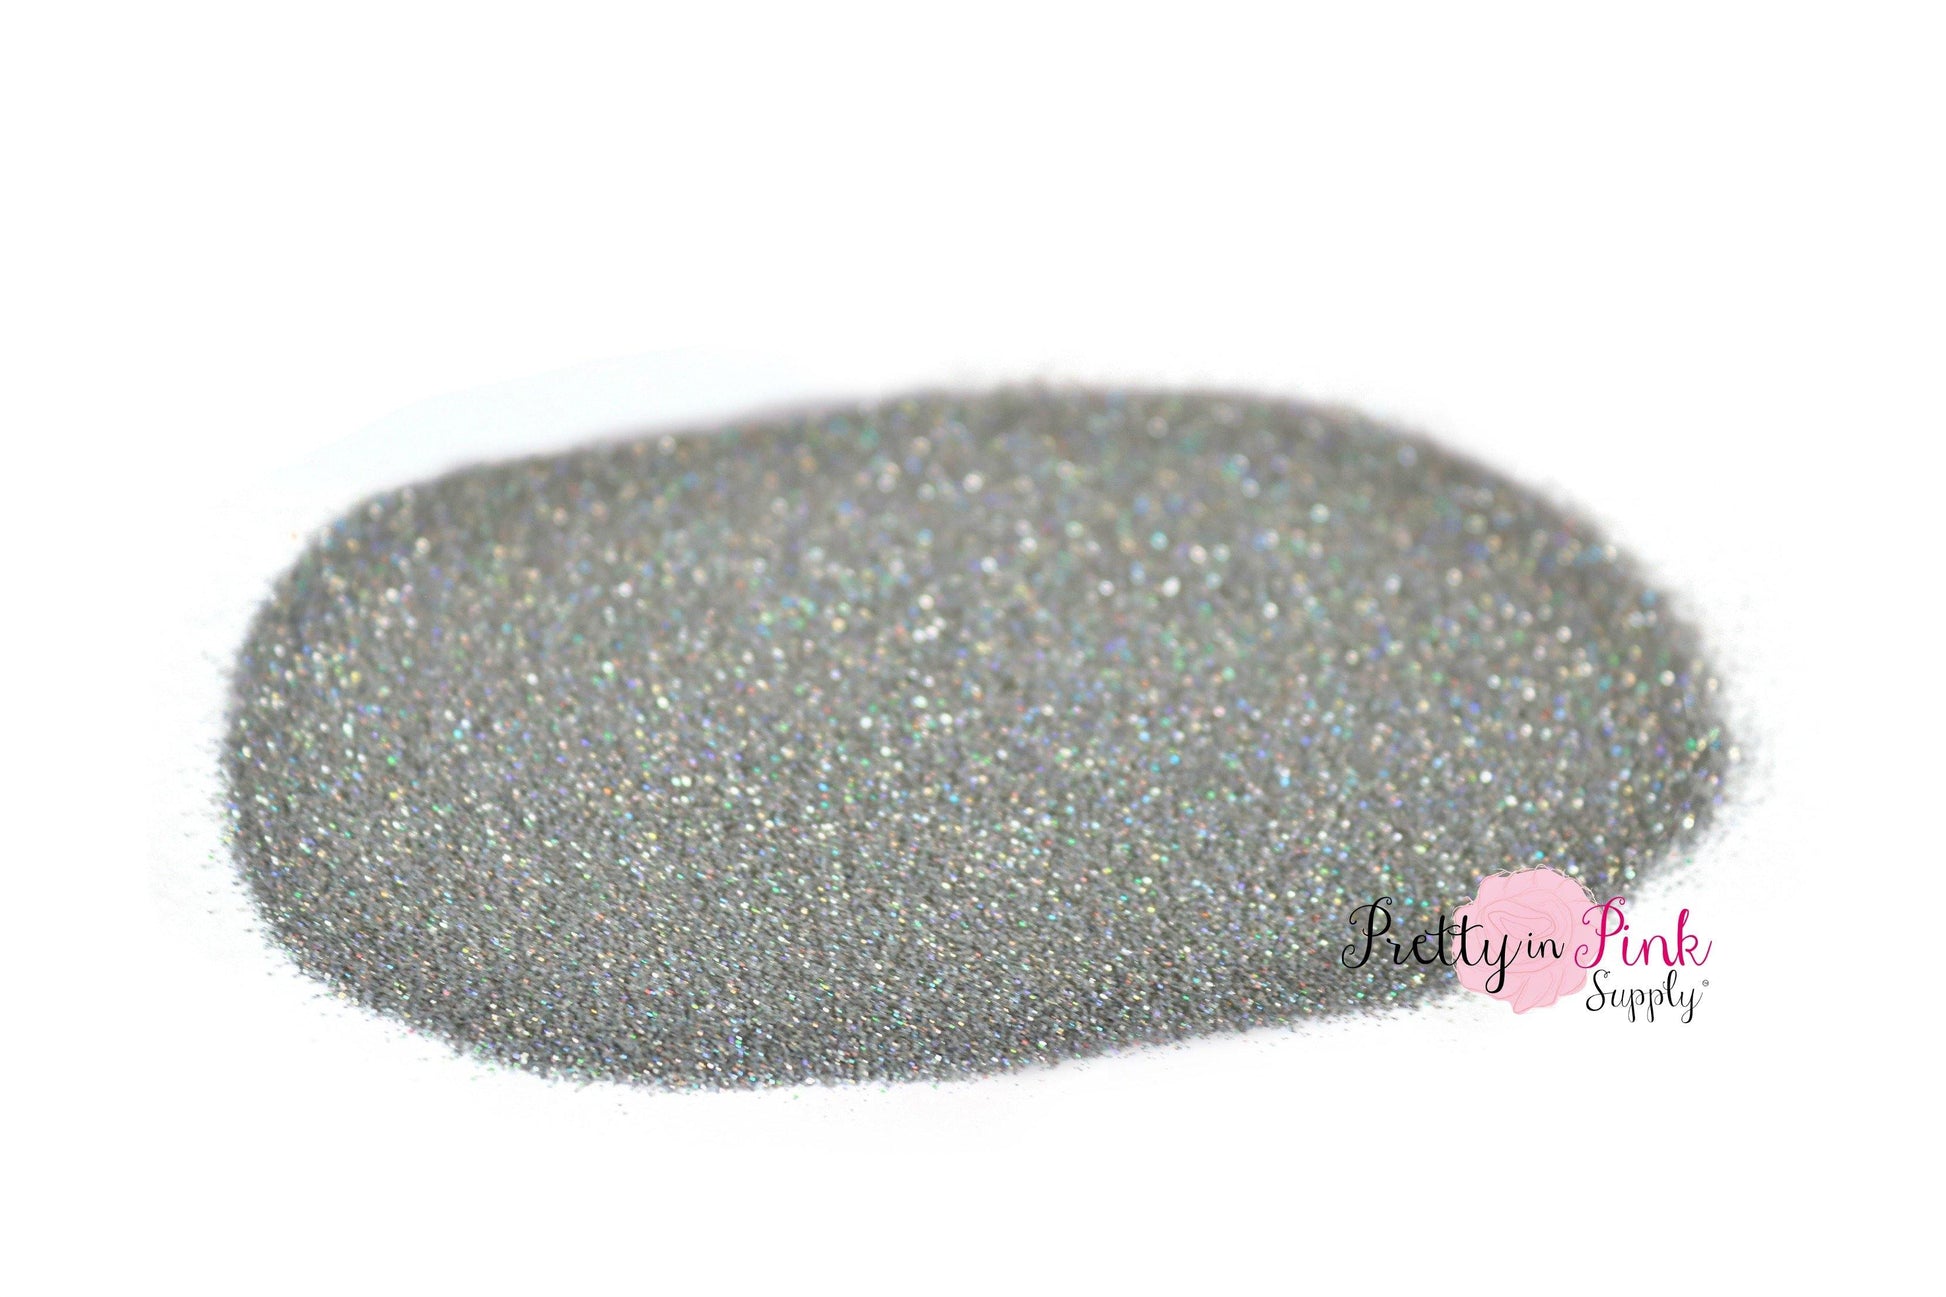 Silver Iridescent Ultra Fine Glitter - Pretty in Pink Supply